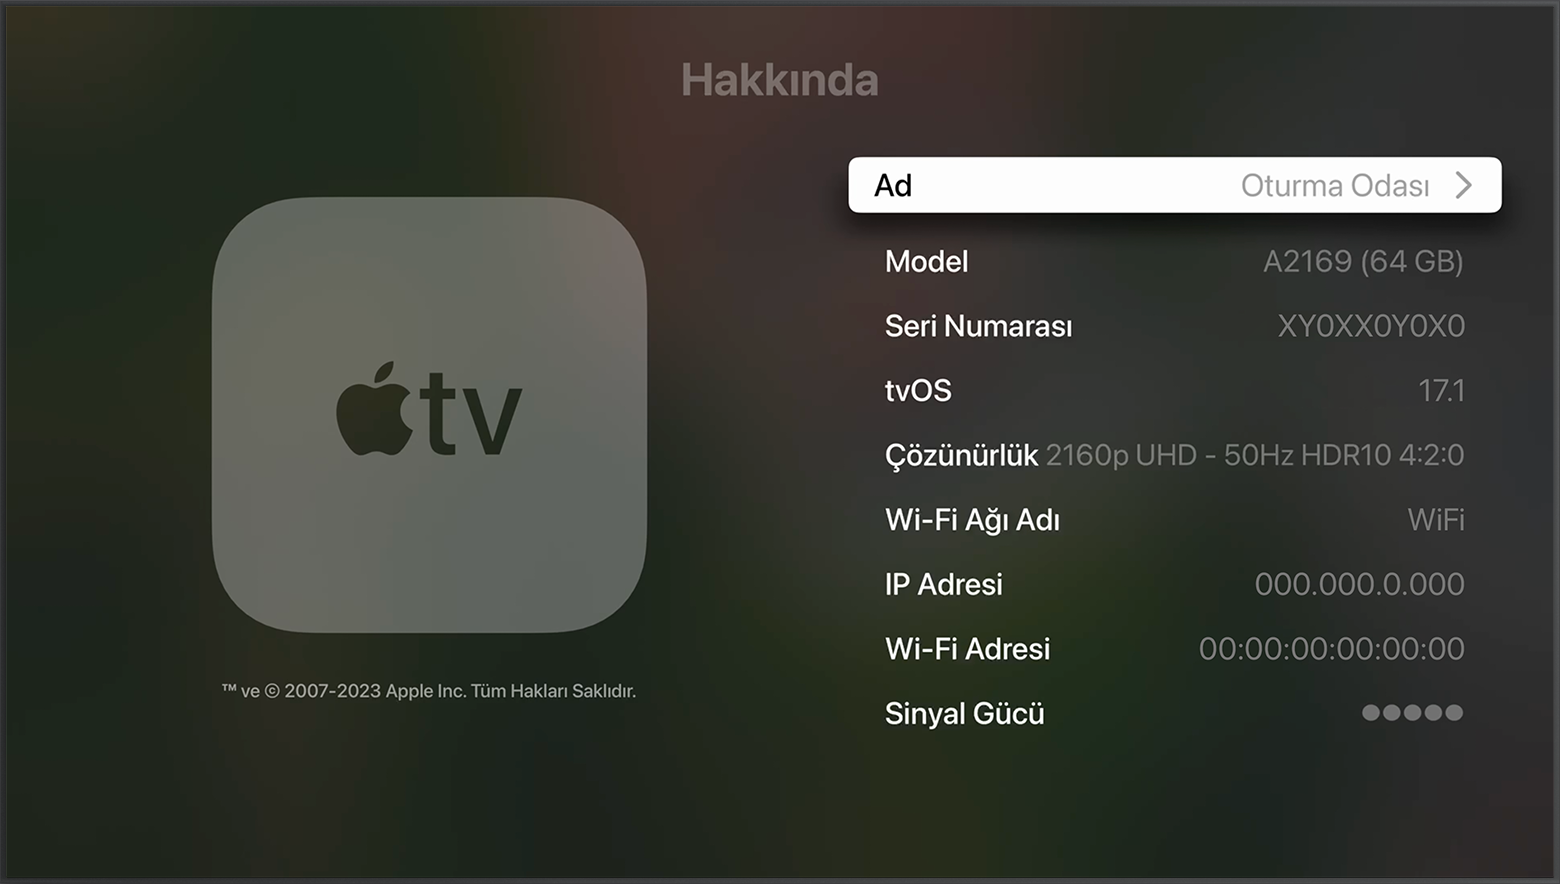 Seri Numarası, Apple TV'deki Hakkında ekranının üst kısmına yakın bir yerde gösteriliyor